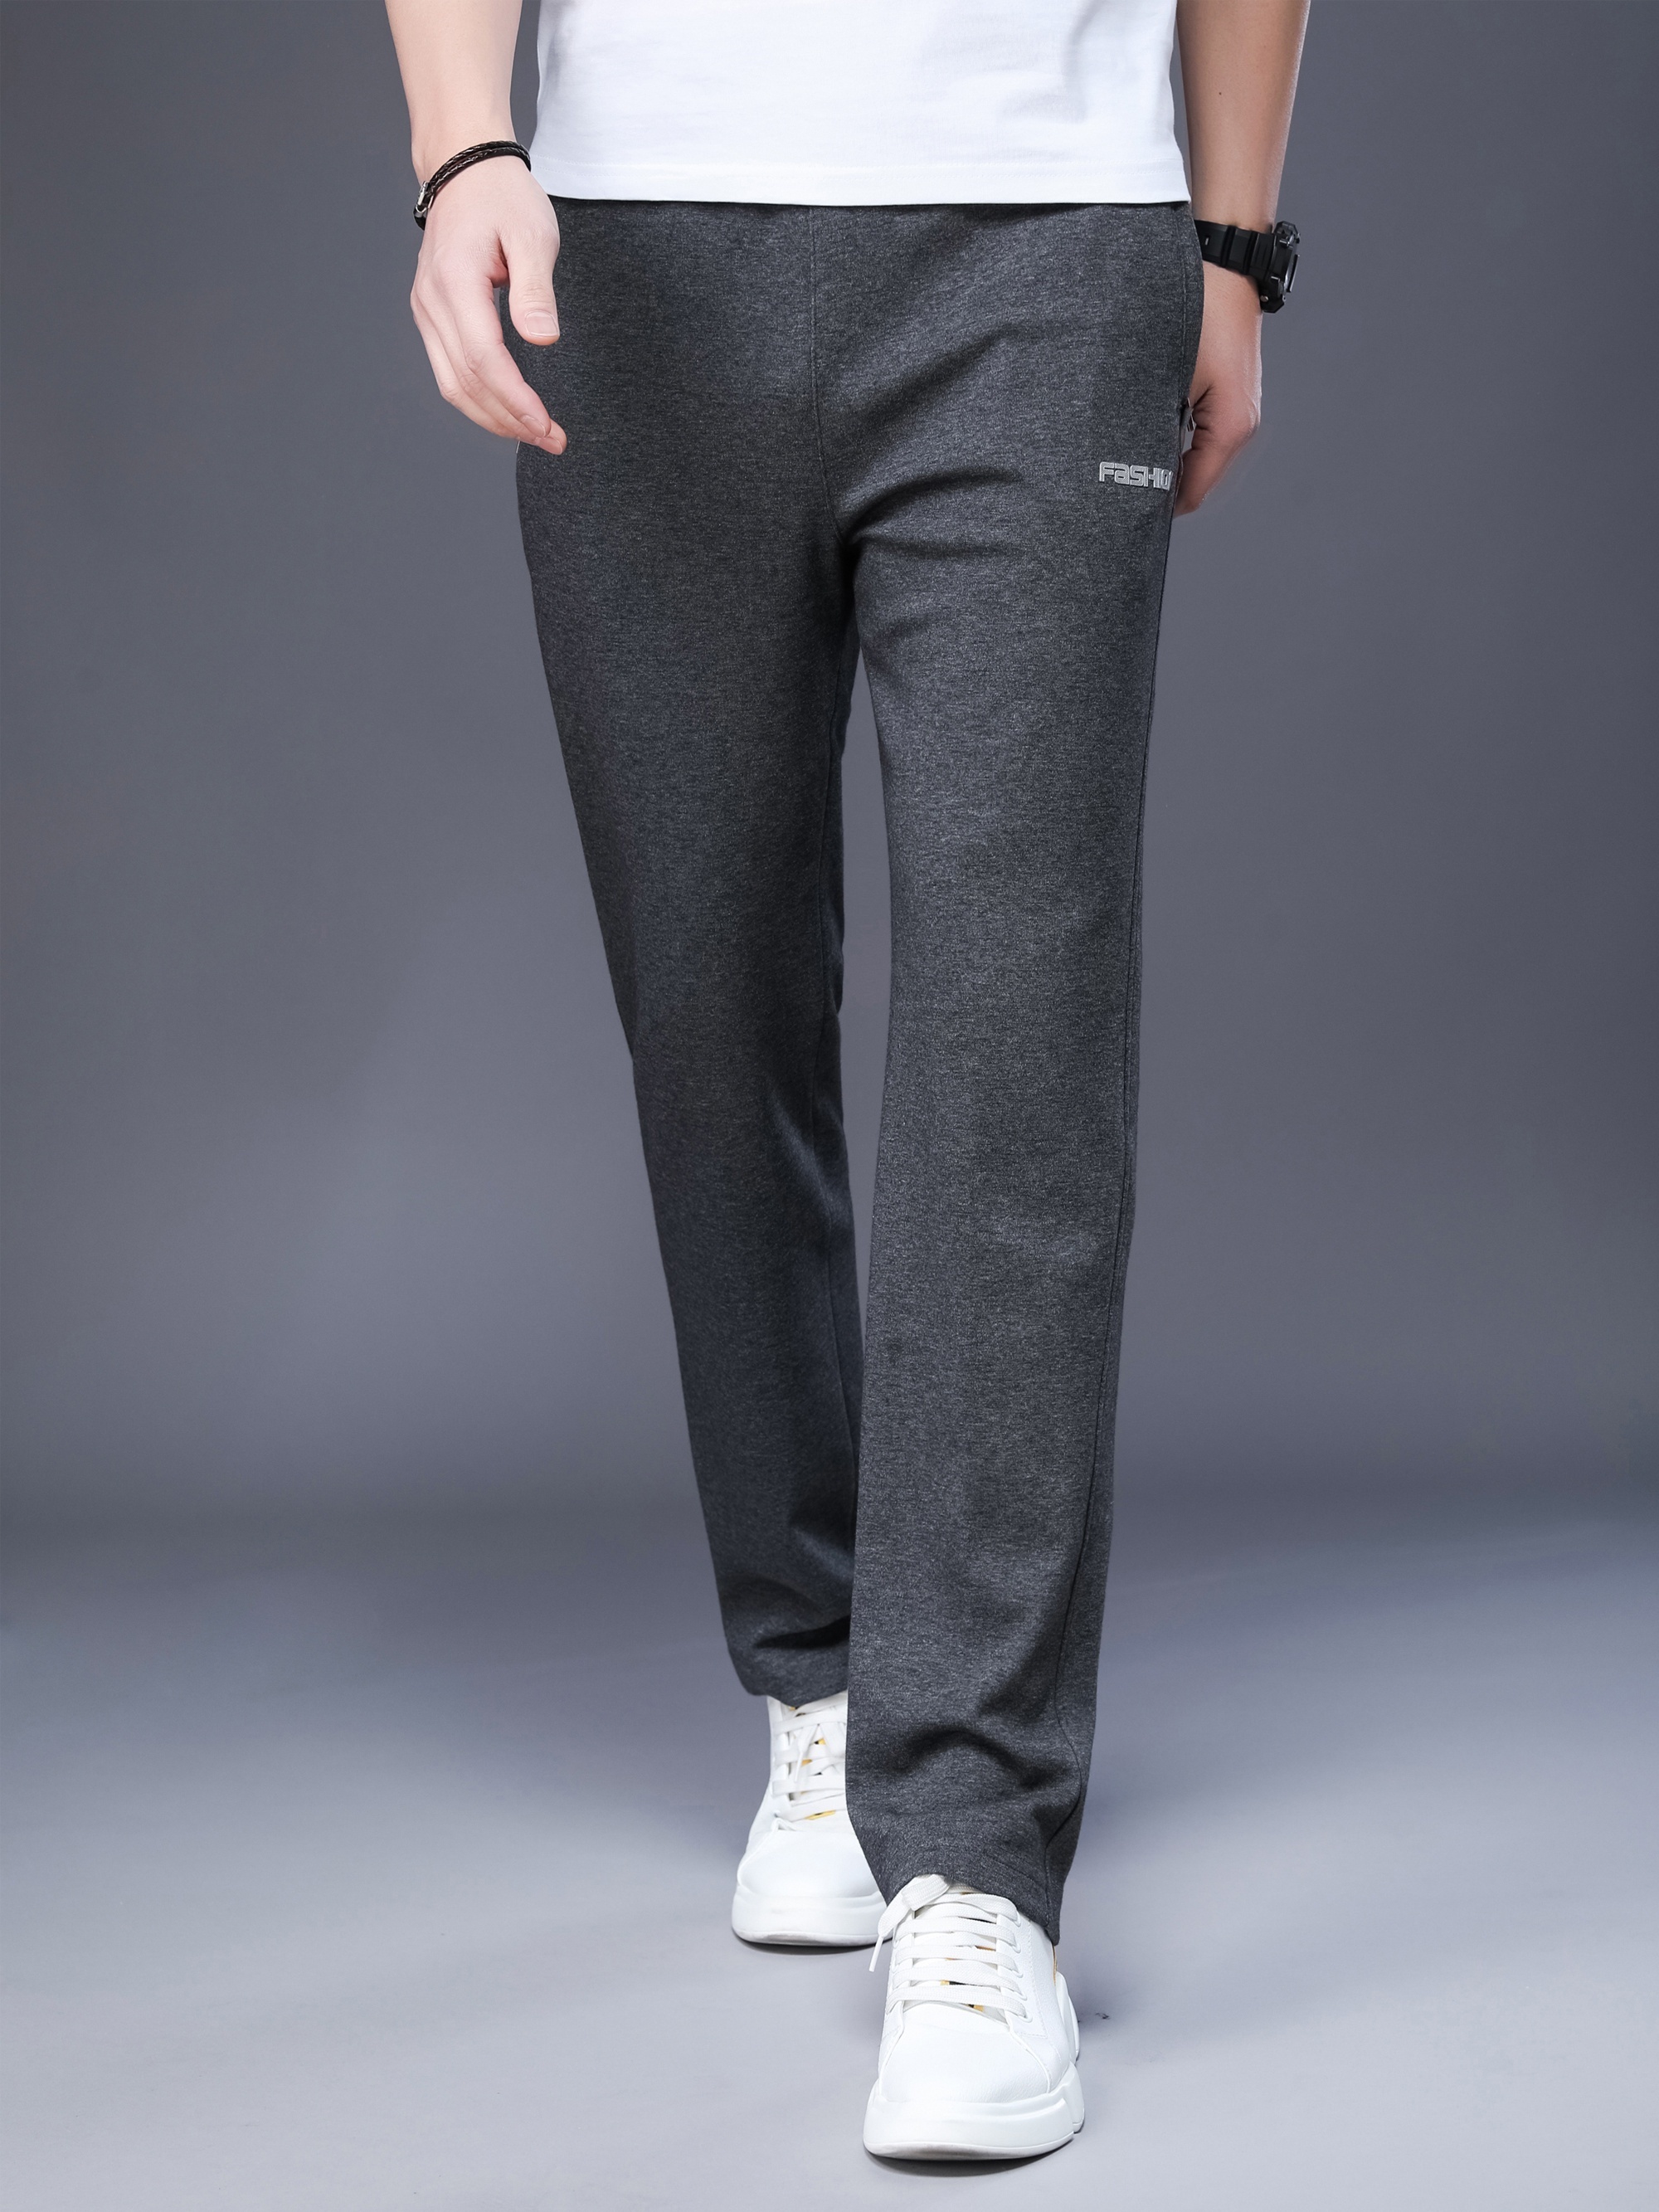 Pantalón de caballero adaptado elástico cintura- Especial geriátrico.